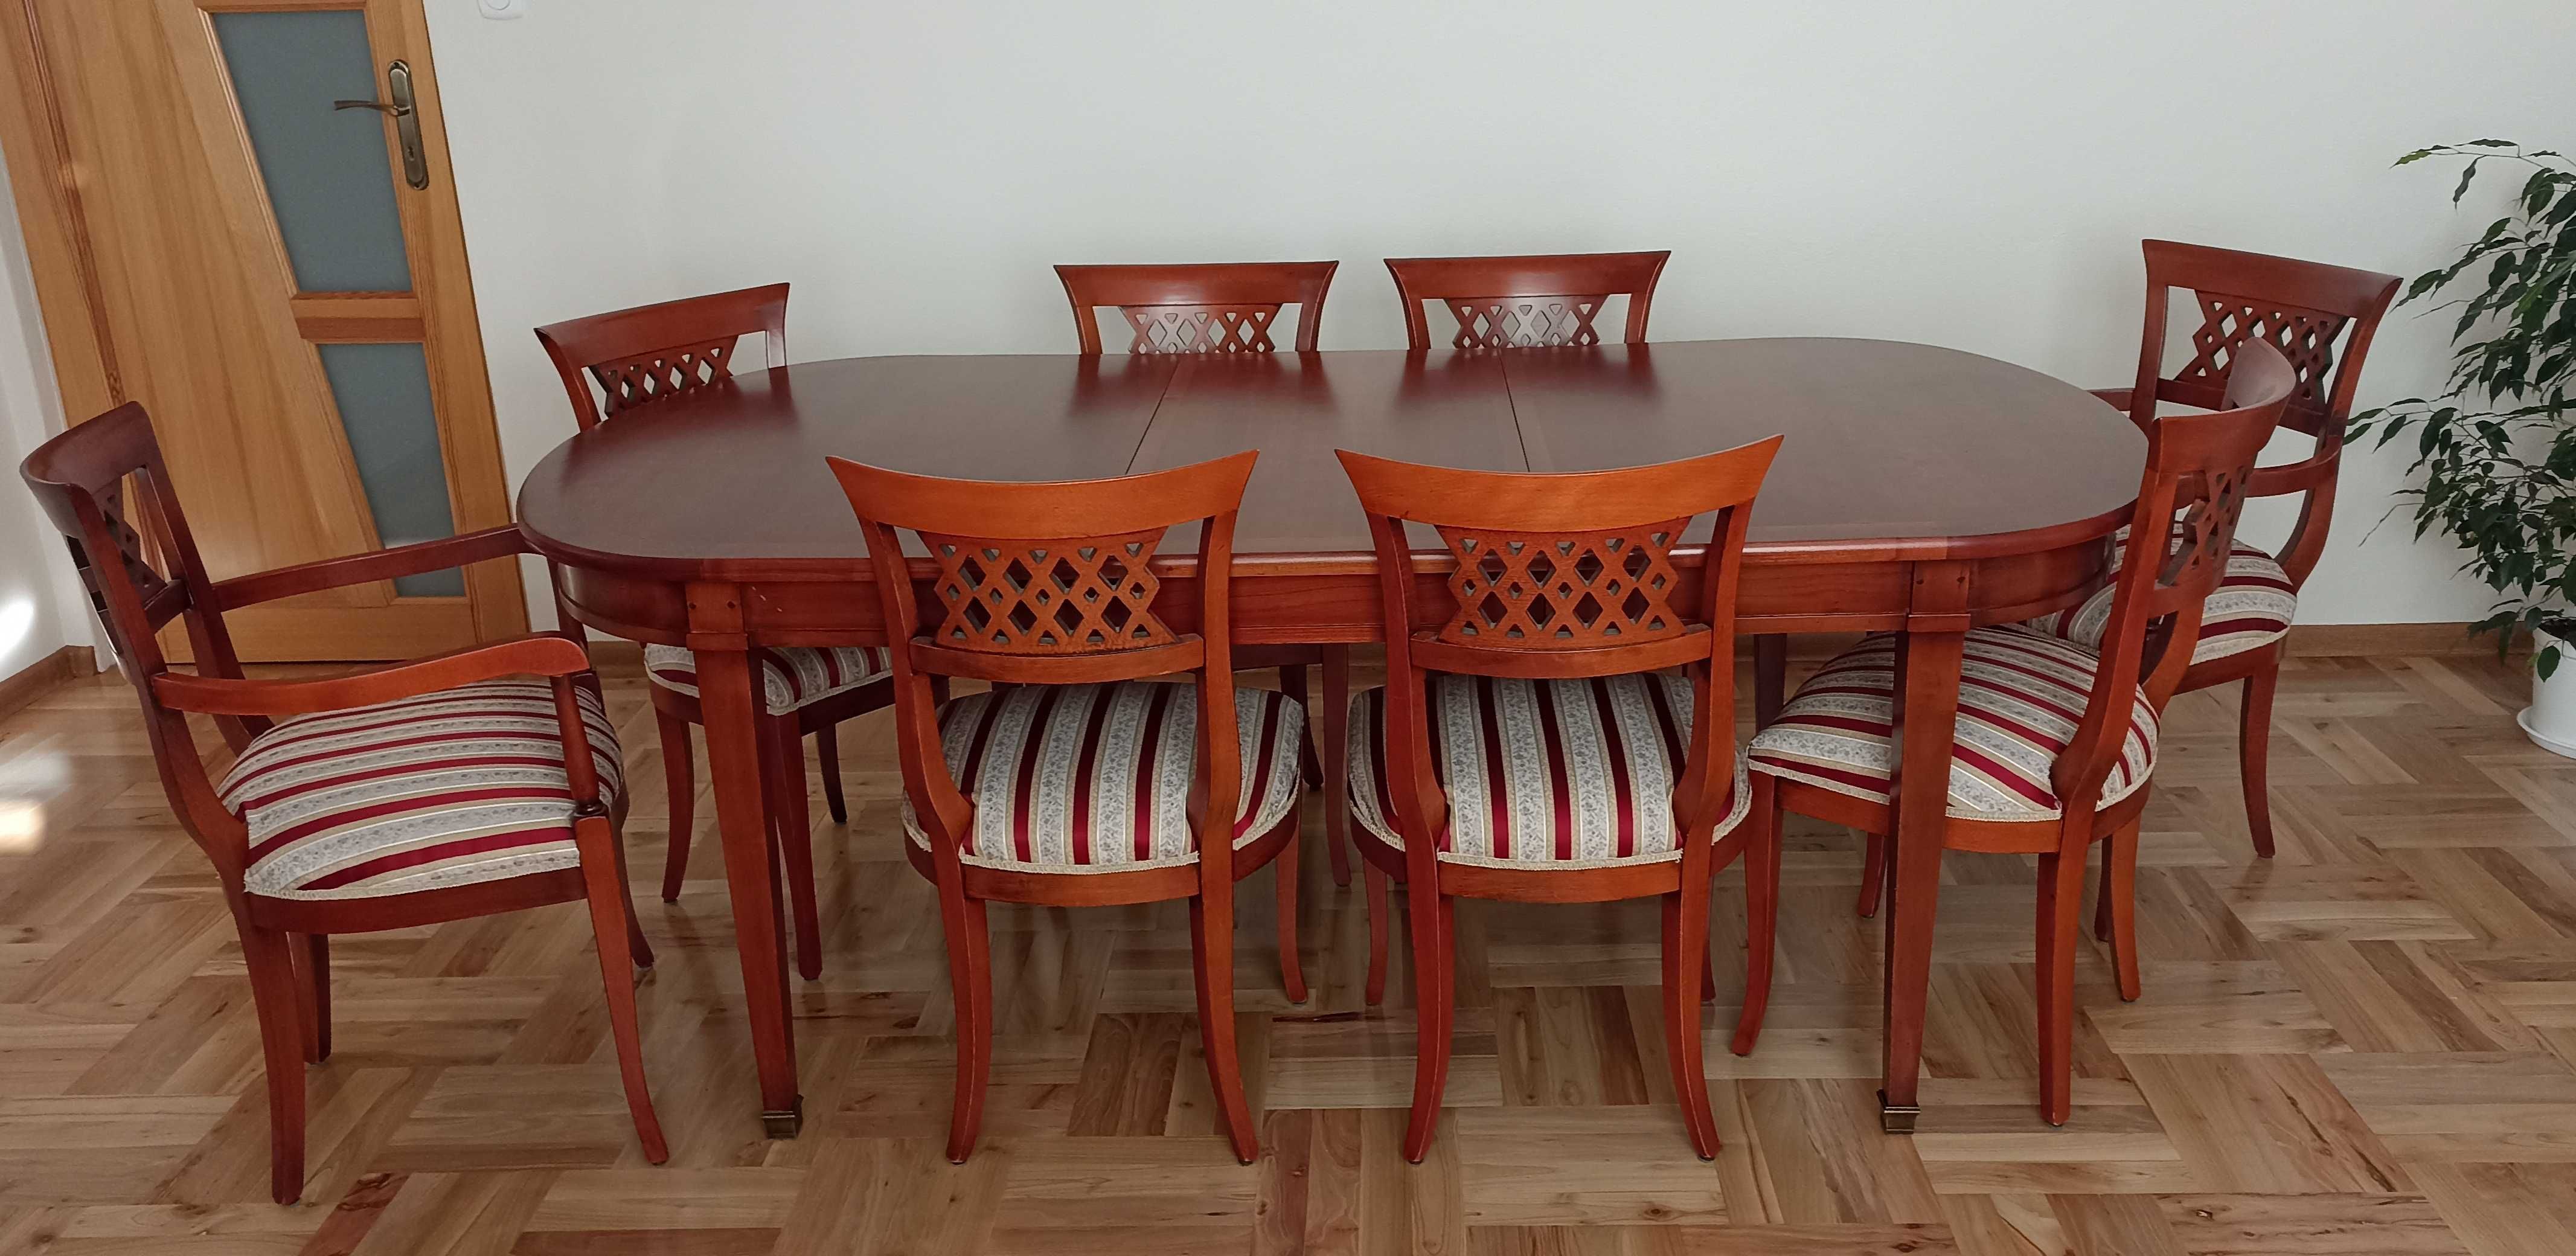 Stół z krzesłami (8 krzeseł)